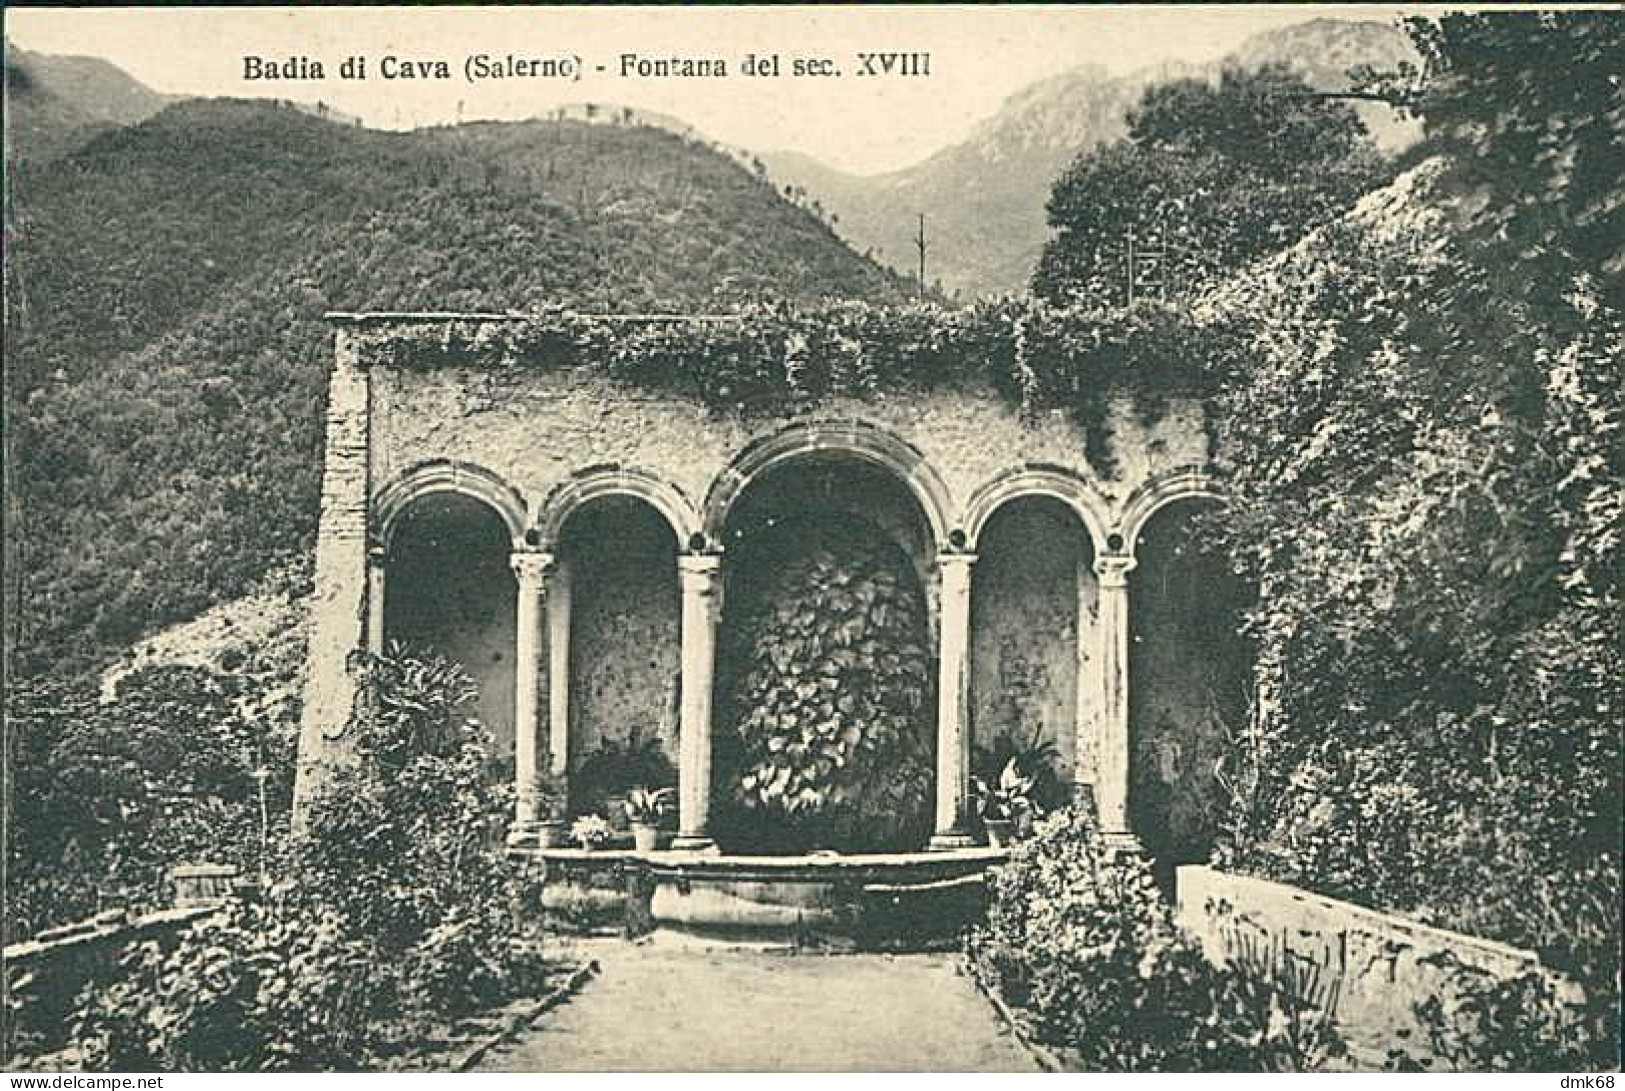 CAVA DE' TIRRENI ( SALERNO ) BADIA DI CAVA - FONTANA DEL SEC. XVIII - 1930s (20855) - Cava De' Tirreni